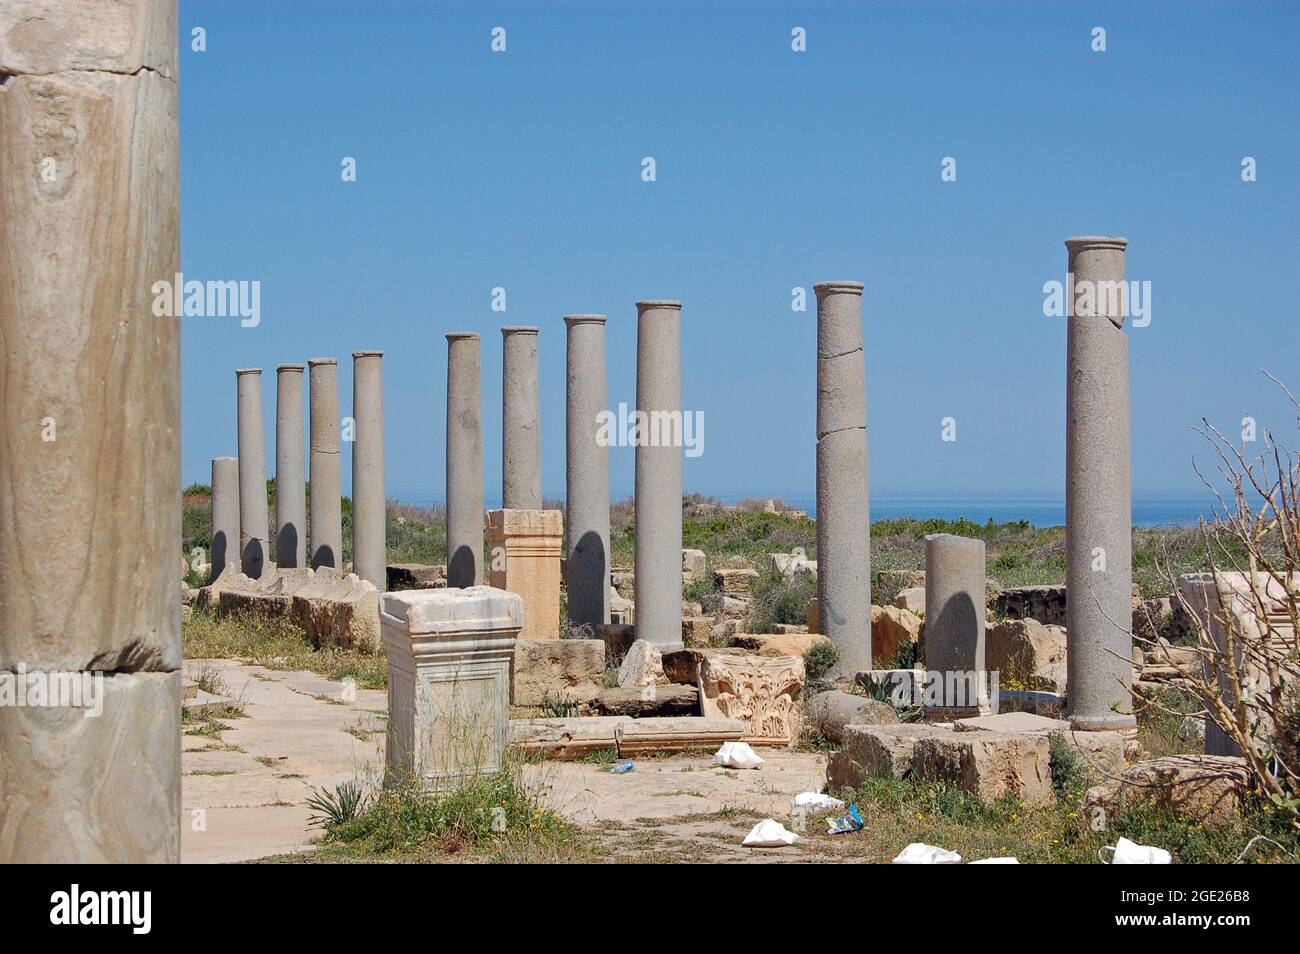 Anciennes colonnes de pierre romaines près de la rive de la mer dans la ville en ruines de Leptis Magna sur la côte de Libye. Banque D'Images